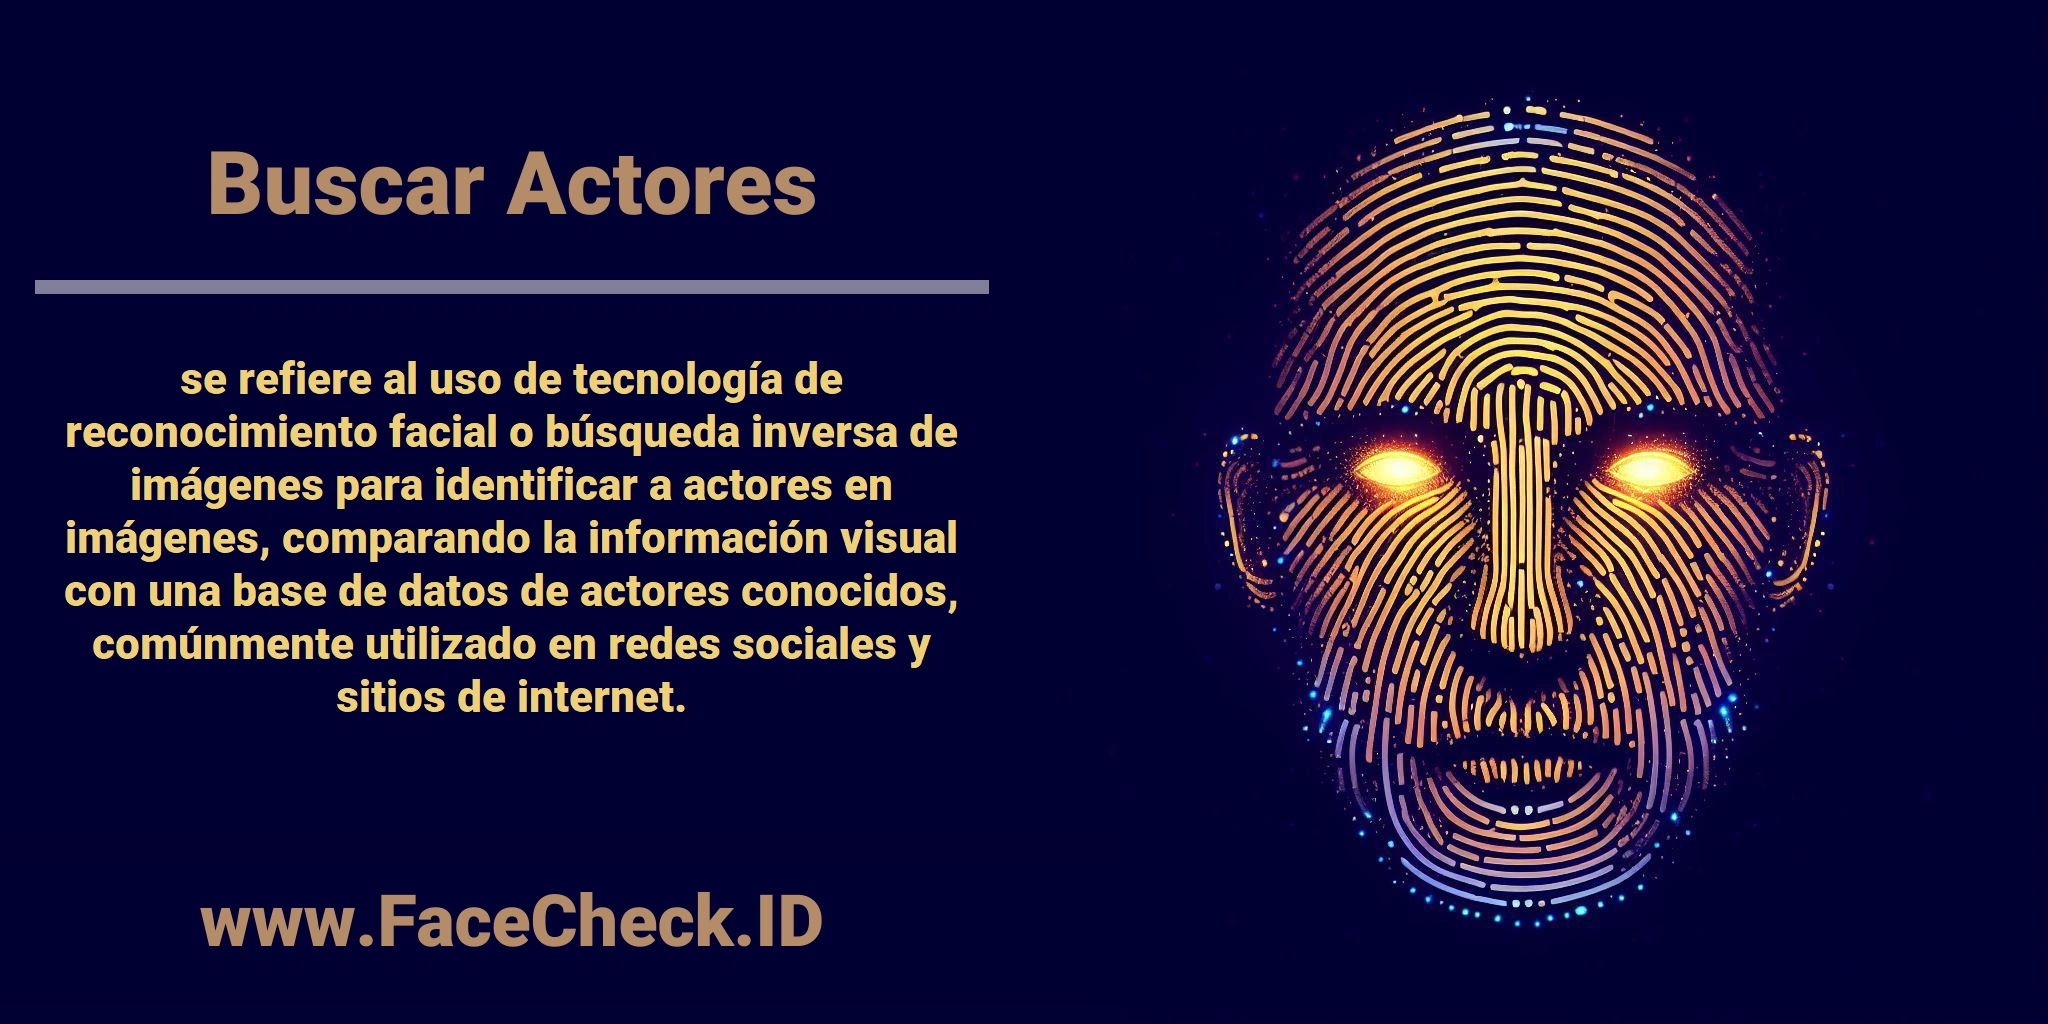 <b>Buscar Actores</b> se refiere al uso de tecnología de reconocimiento facial o búsqueda inversa de imágenes para identificar a actores en imágenes, comparando la información visual con una base de datos de actores conocidos, comúnmente utilizado en redes sociales y sitios de internet.